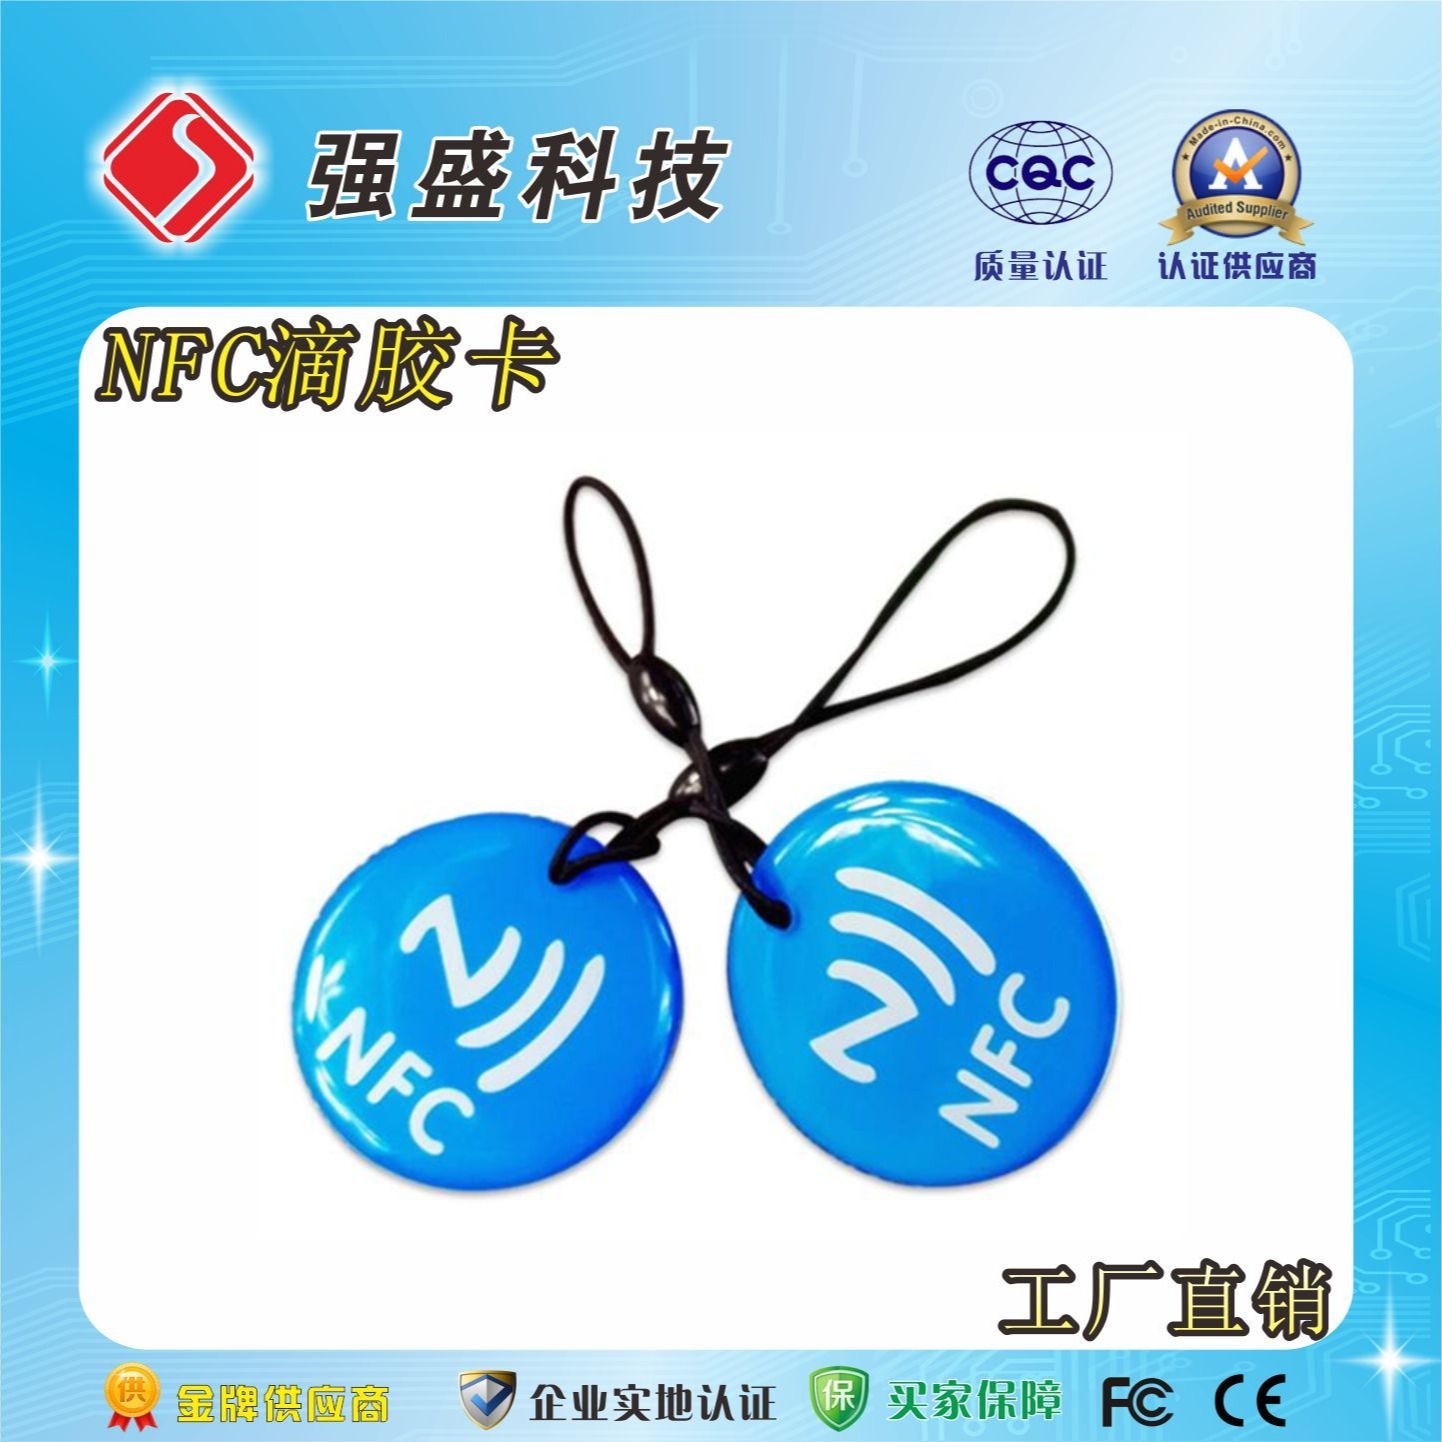 广州强盛rfid卡厂家定制、门禁卡IC射频卡定制、NFC213巡检卡定制图片